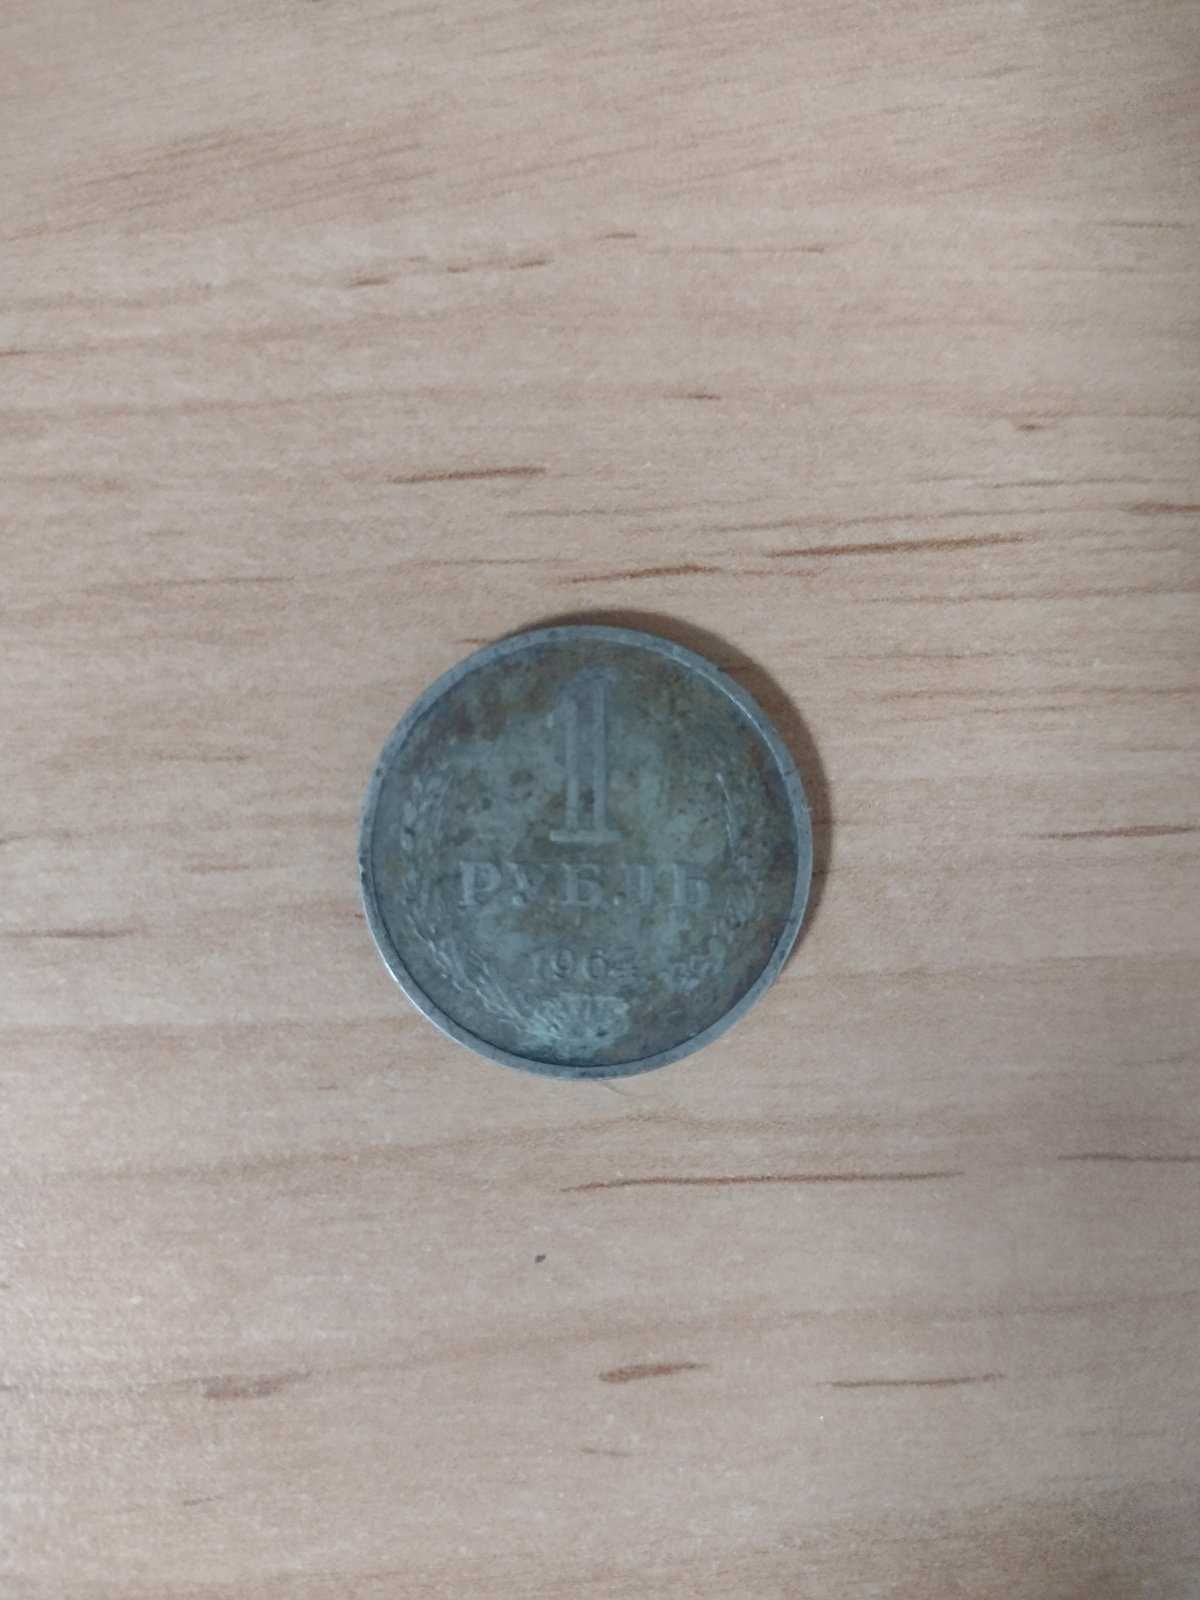 5 Монет образцов 1870-1970, 1964,1979,1980,1977. Подробнее в описании.